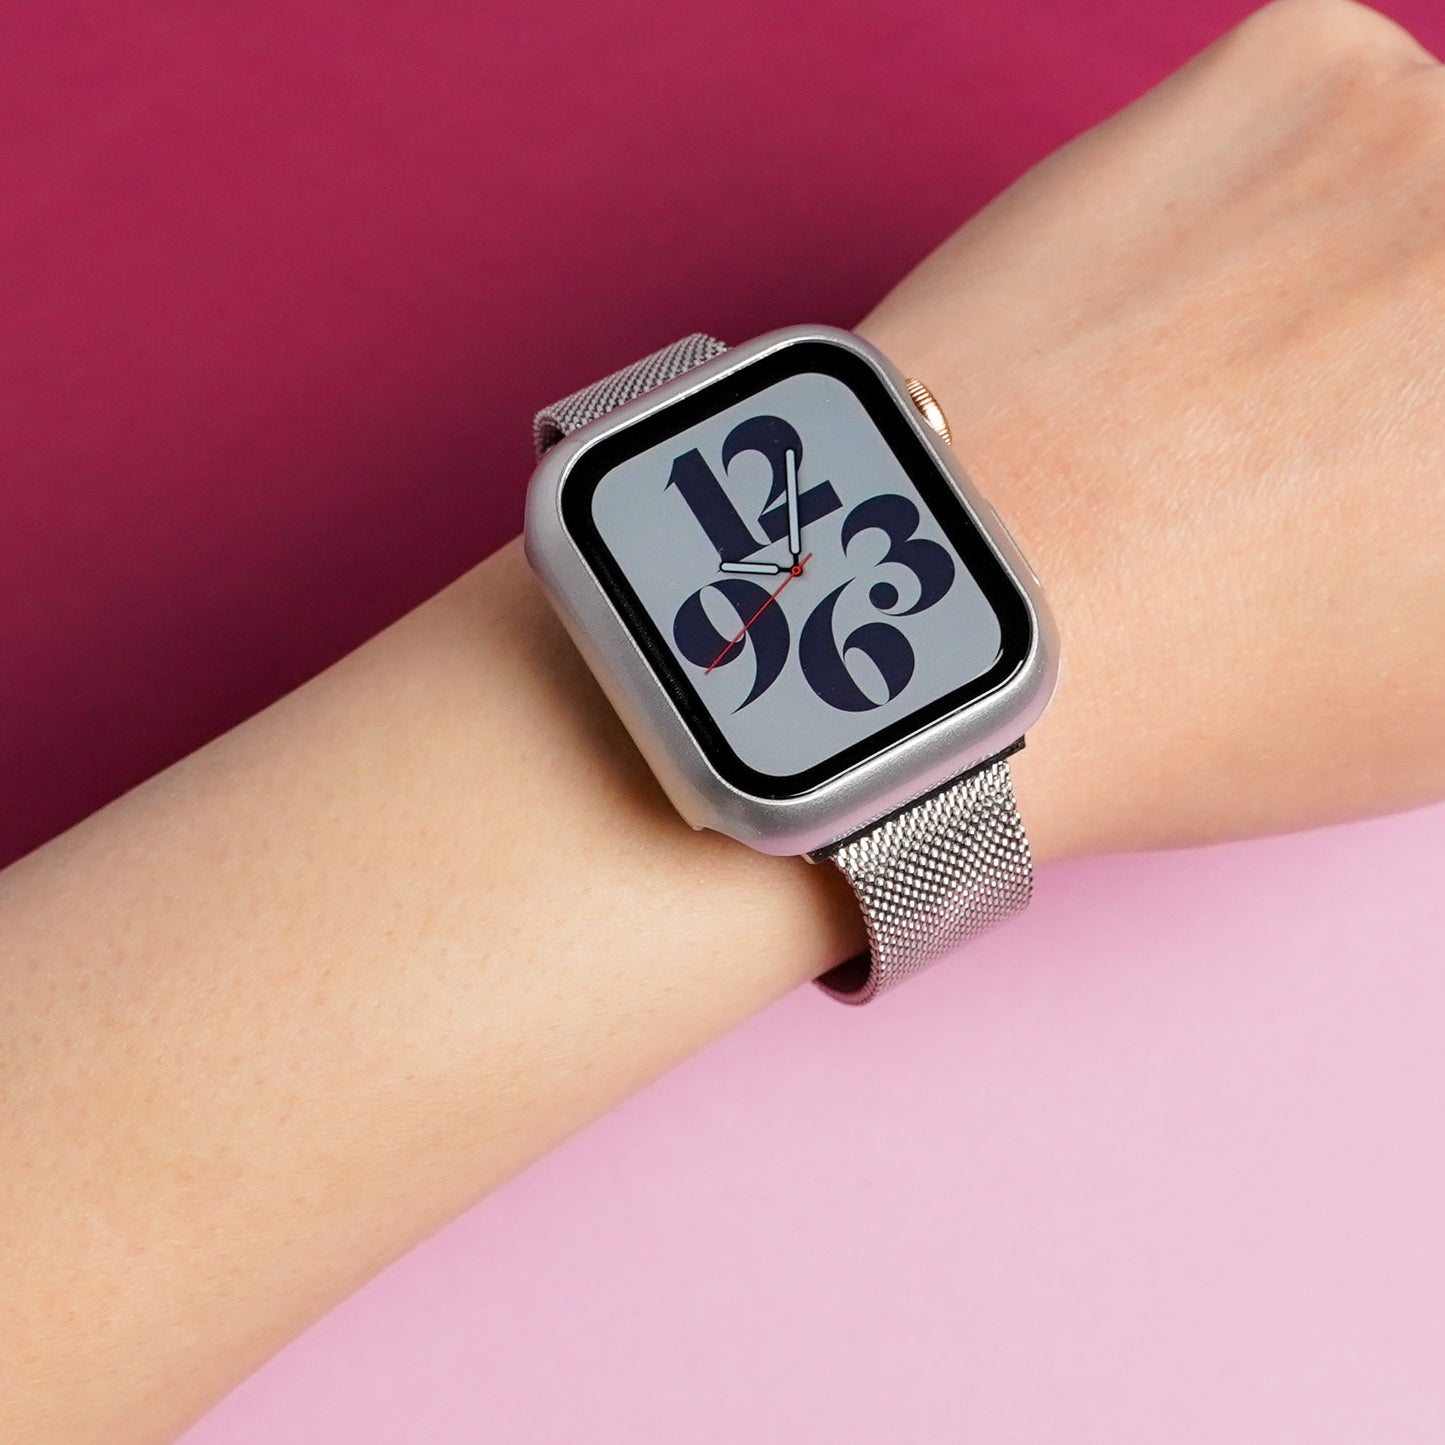 マット 全面 保護カバー ハードタイプ アップルウォッチ フレーム Apple Watch